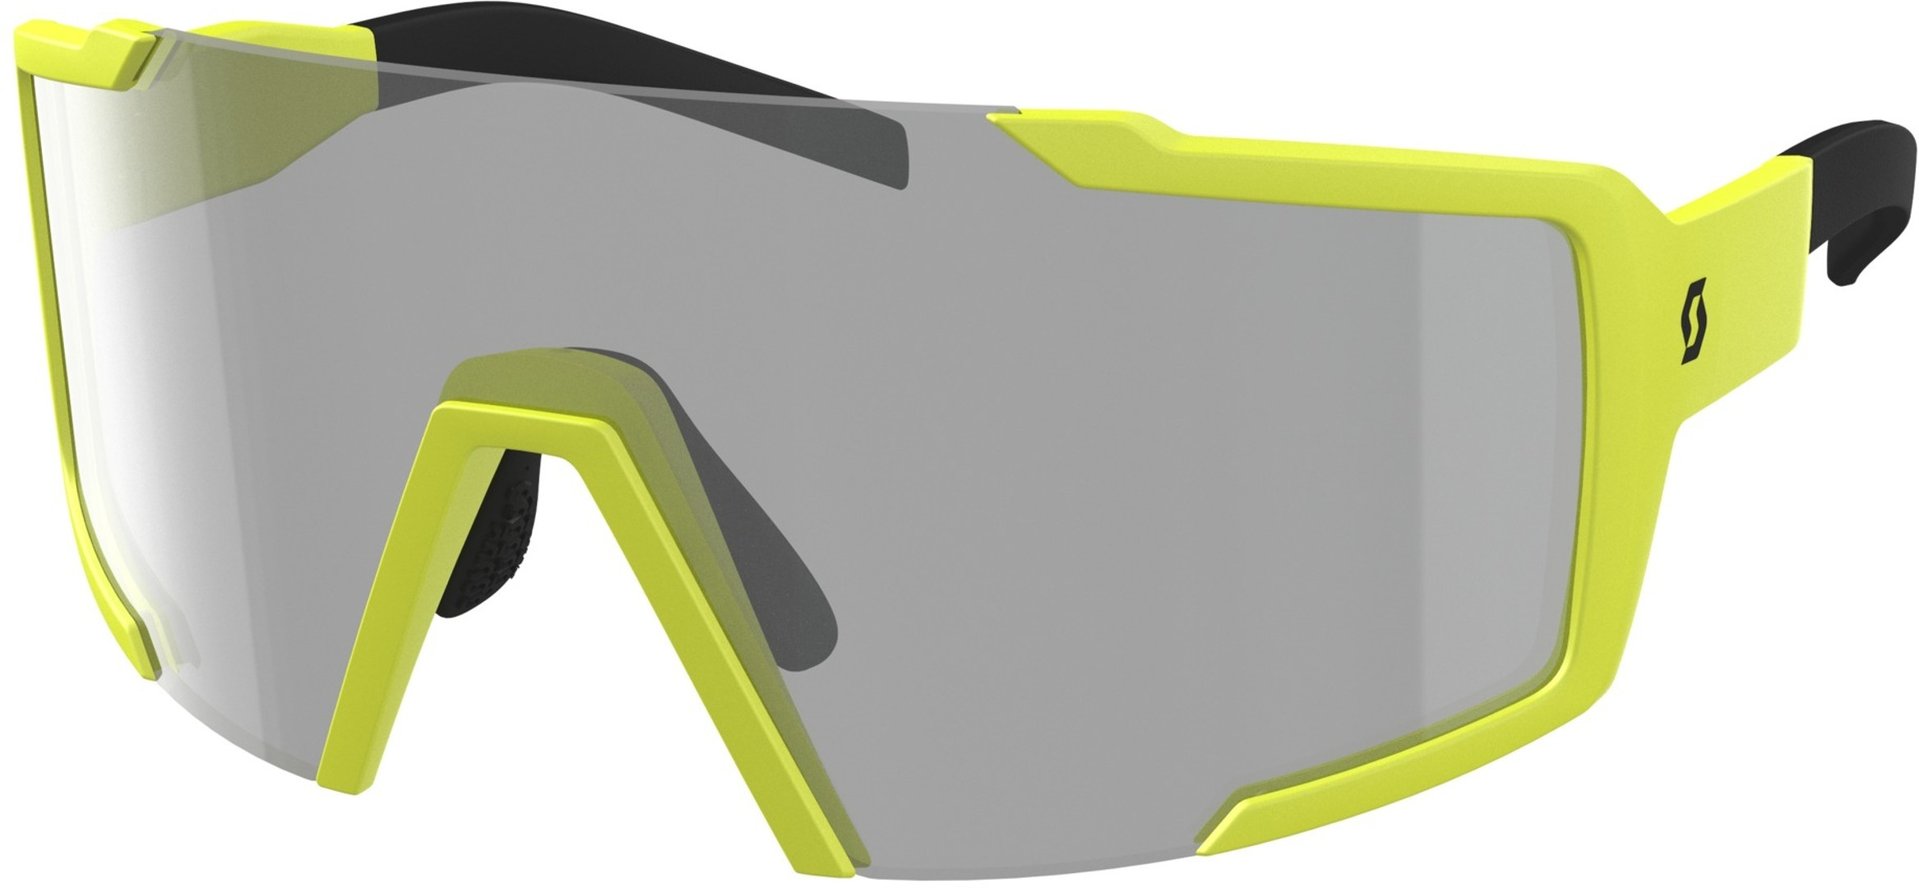 Солнцезащитные очки Scott Shield LS с регулируемой носовой накладкой, желтый/серый солнцезащитные очки 950011 серый